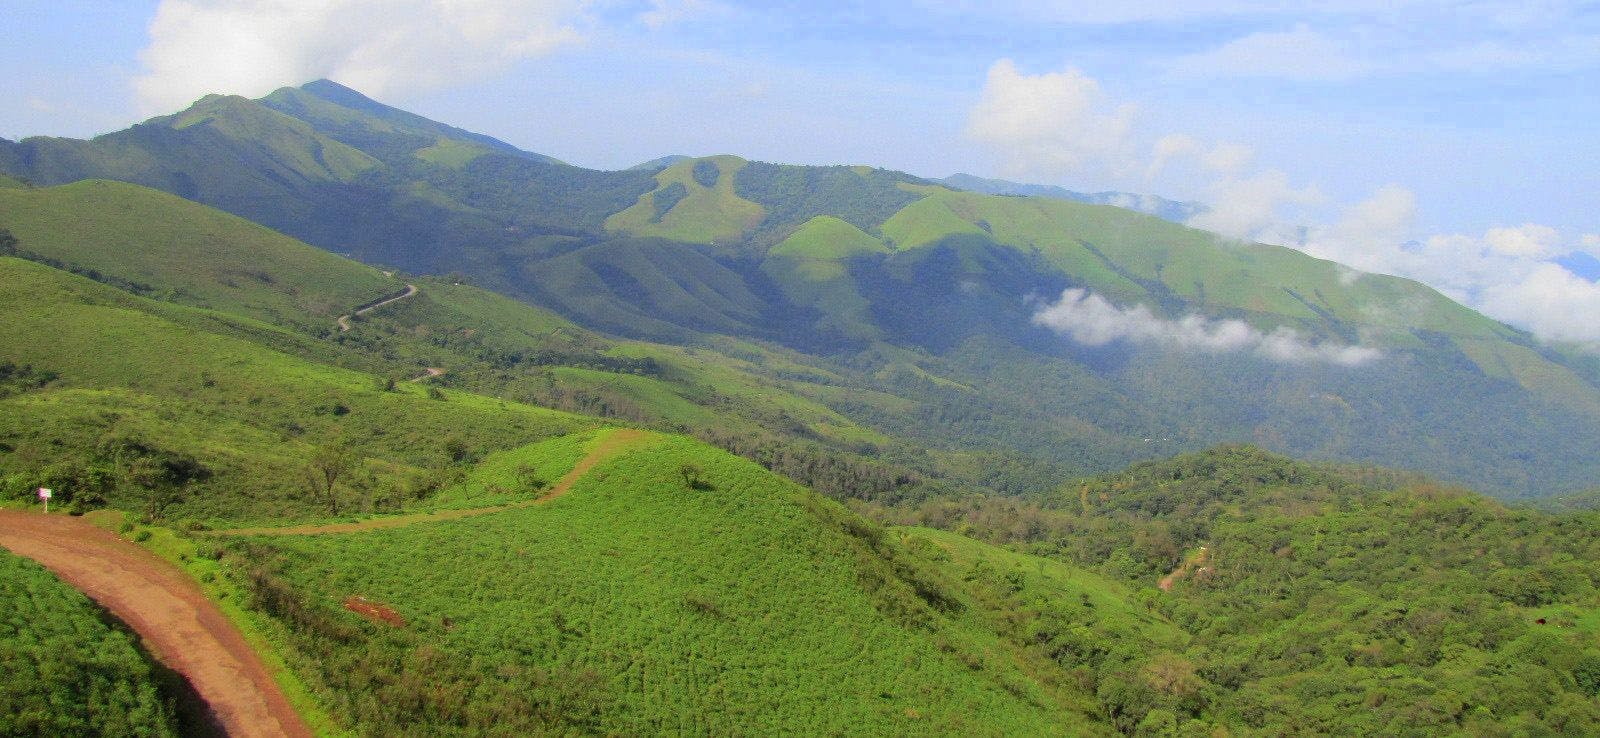 Baba Budangiri range of hills